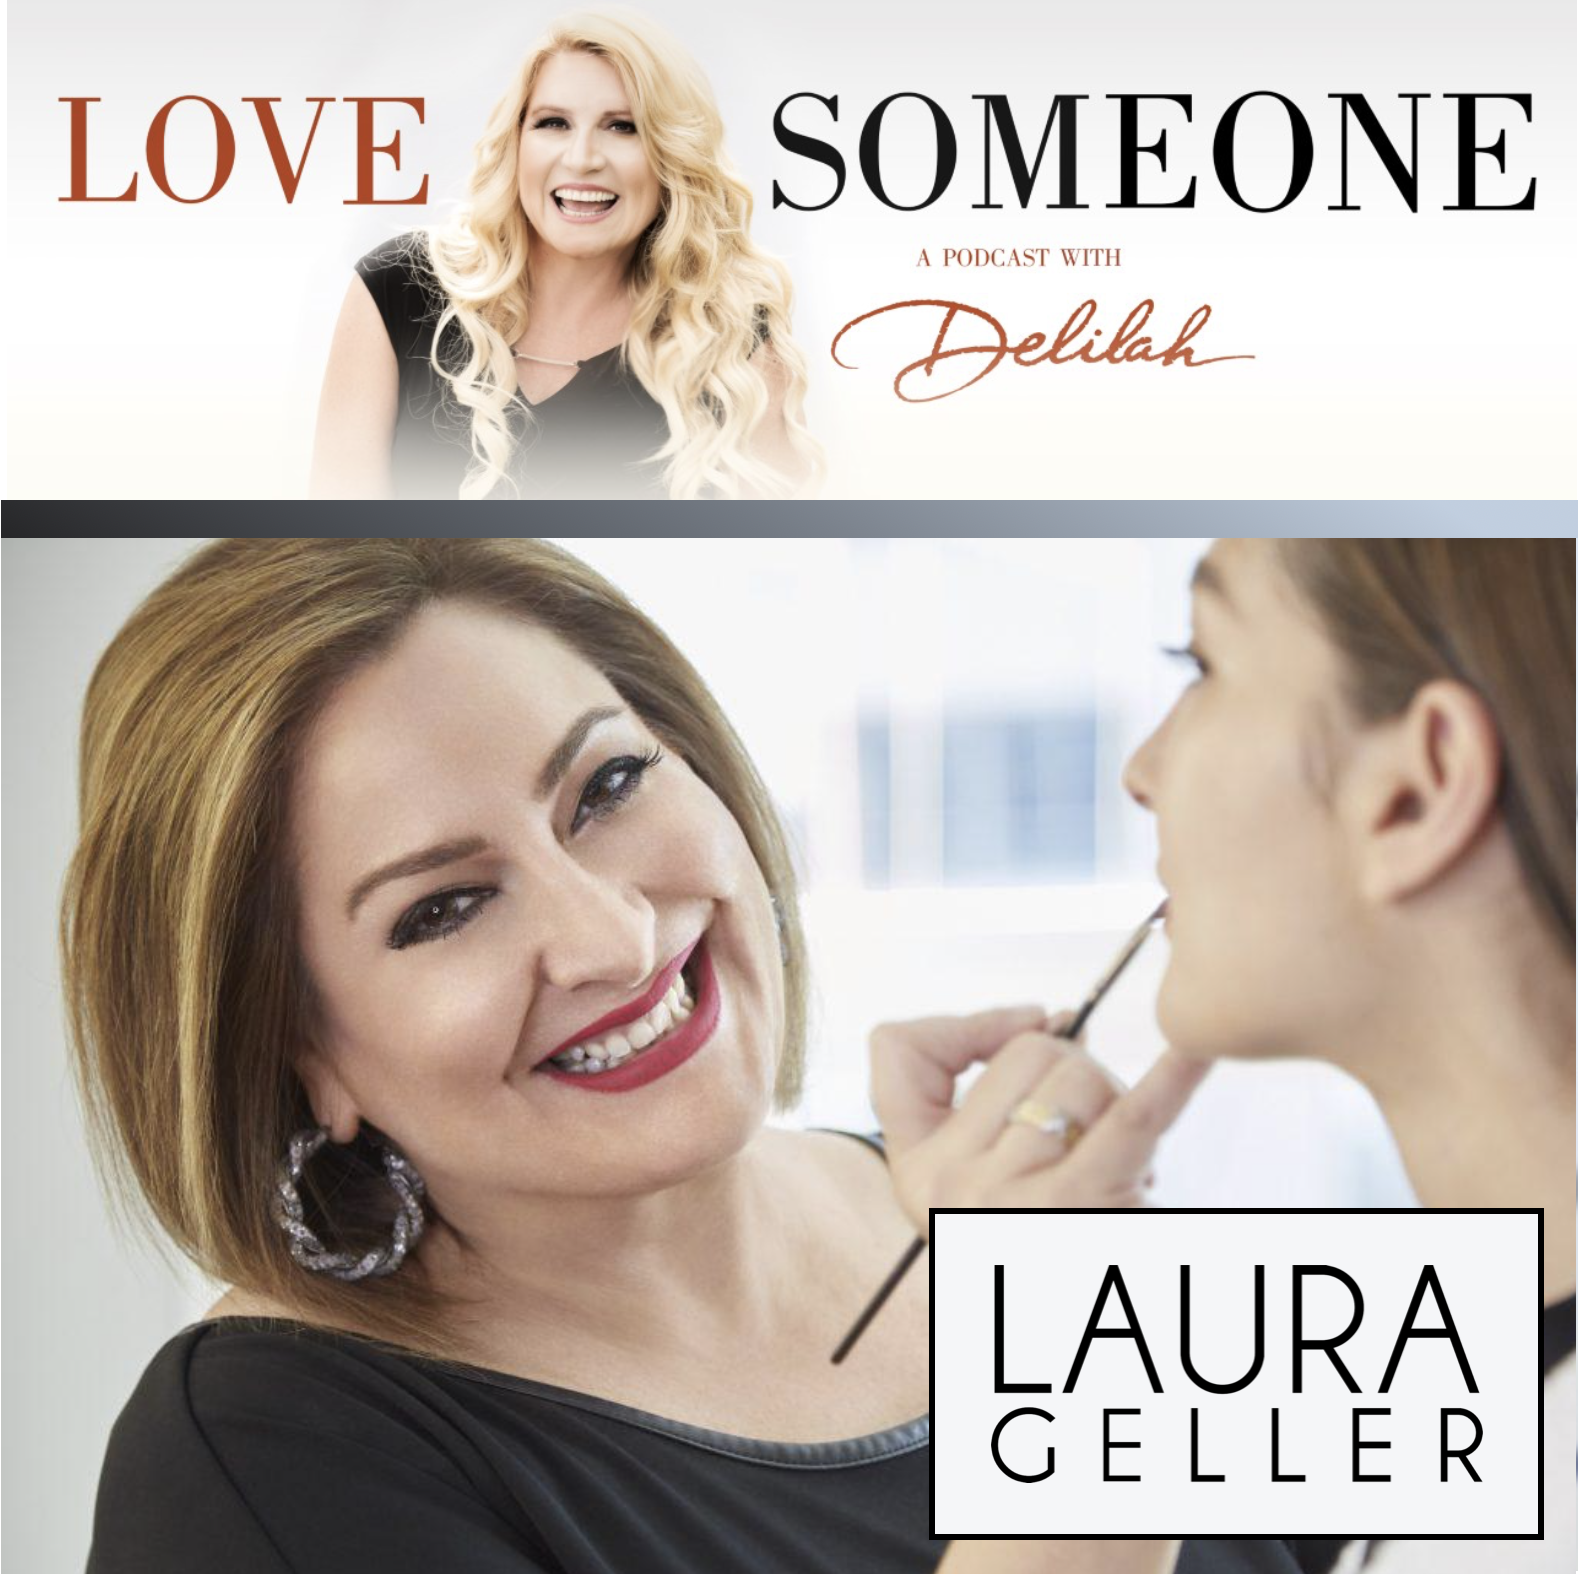 LAURA GELLER: Laura Geller Beauty